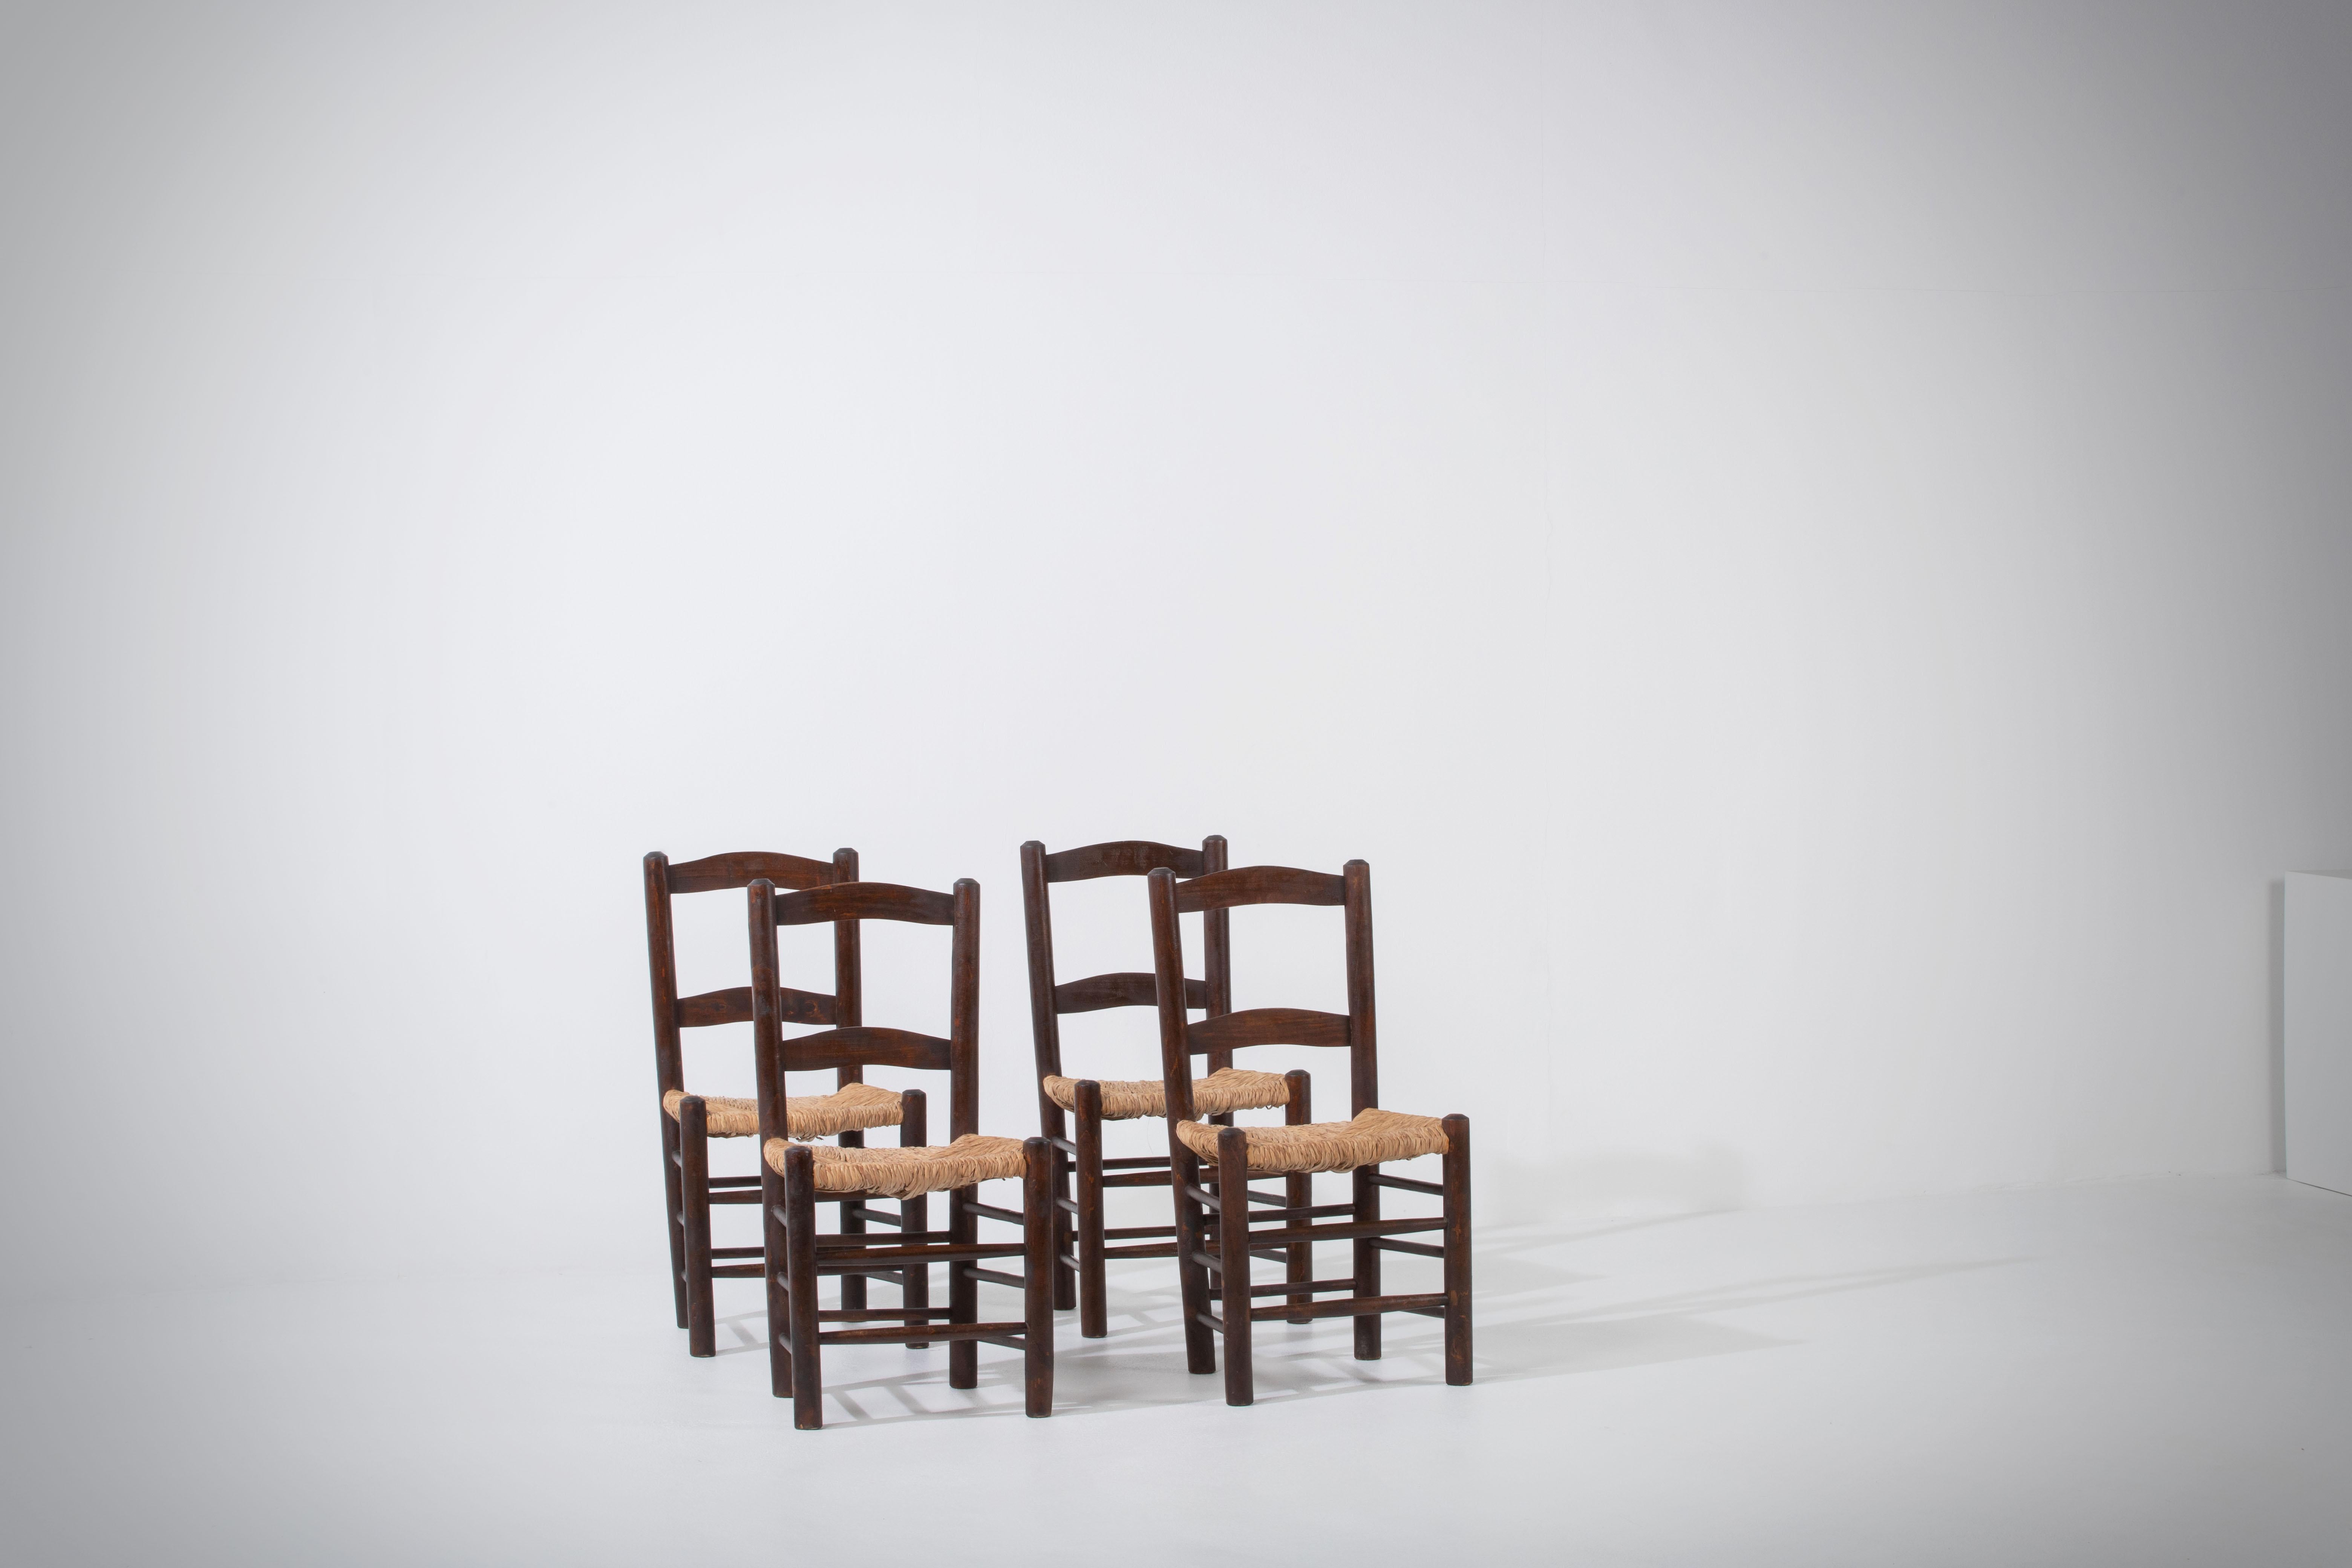 Wir präsentieren eine Reihe von Stühlen aus Eiche und Binsen, inspiriert vom ikonischen Stil der berühmten französischen Designerin Charlotte Perriand. Diese um 1960 in Frankreich gefertigten Stühle verkörpern die zeitlose Eleganz und Handwerkskunst